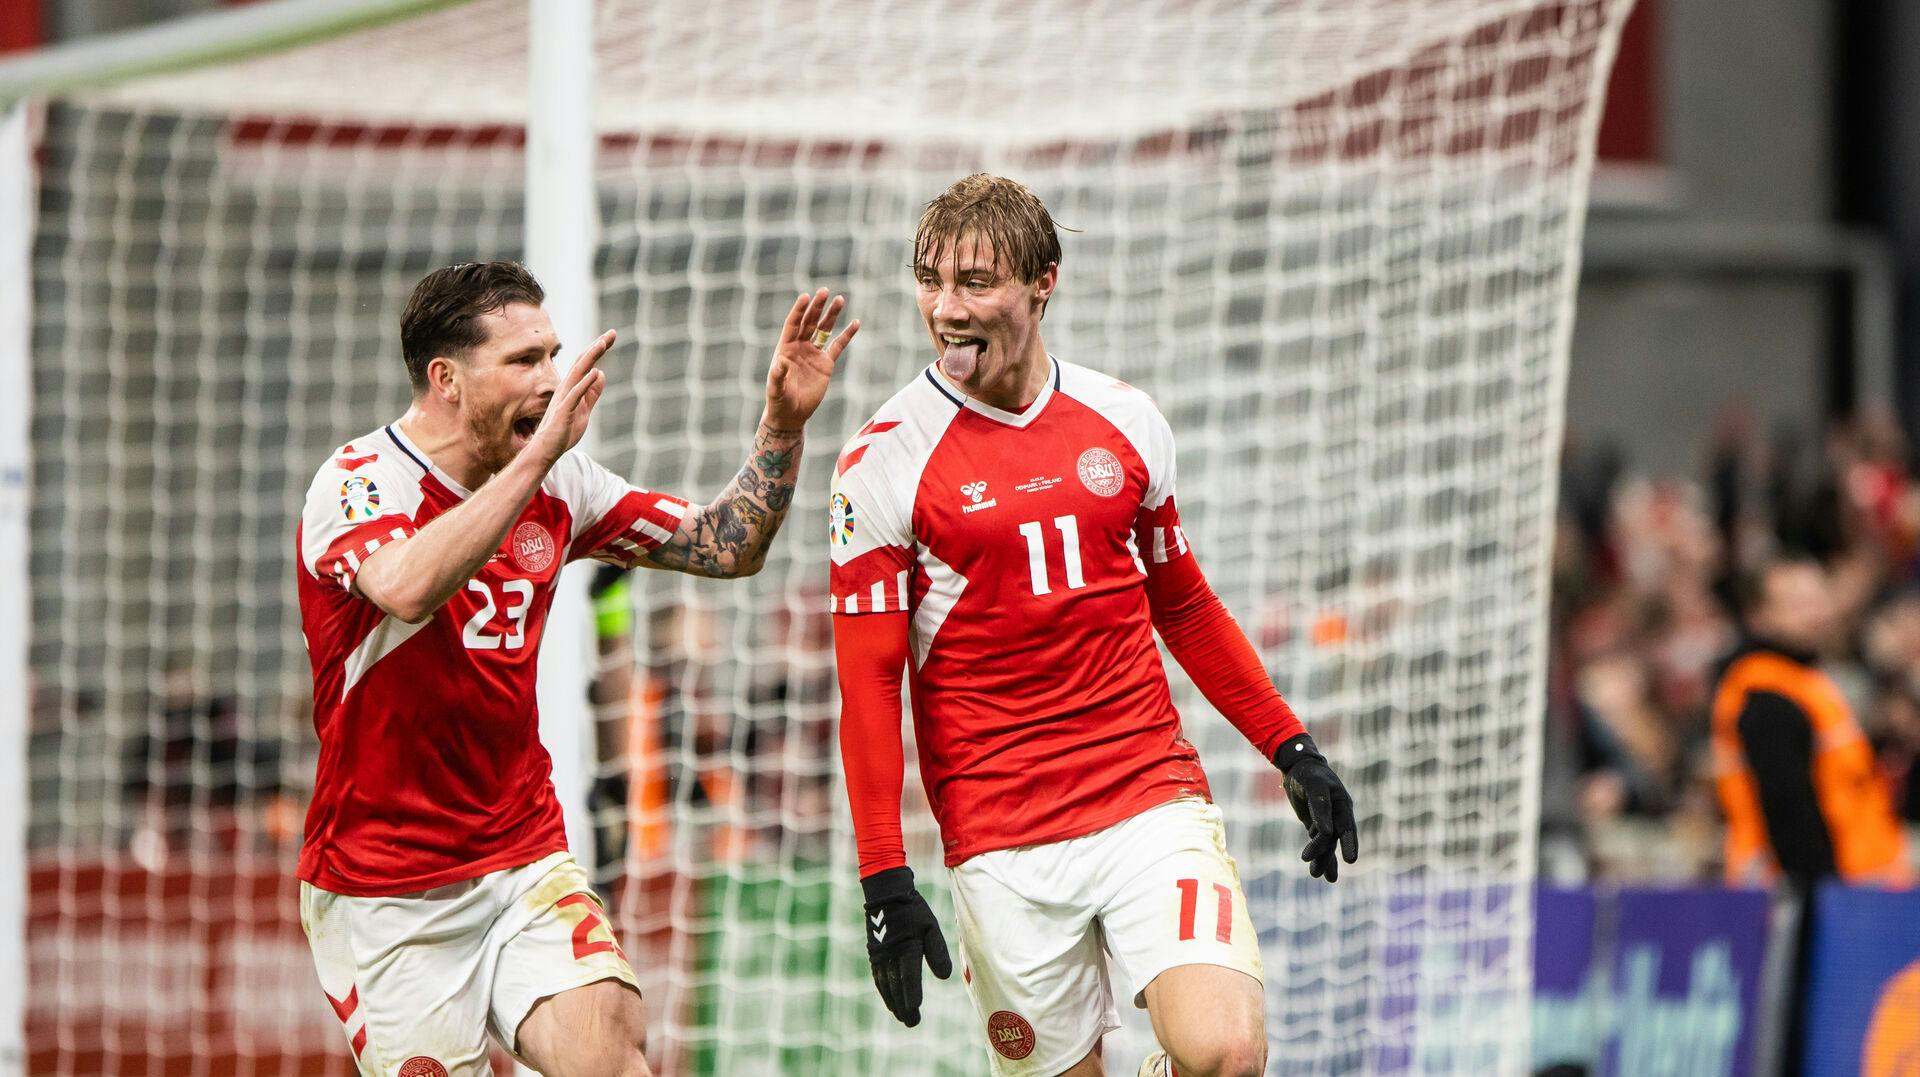 Nummer 11 er det mest populære navn at få på ryggen på de danske landsholdstrøjer for tiden. Der står nemlig Højlund på ryggen af den, og han er lige nu Danmarks ubestridte mest populære spiller.